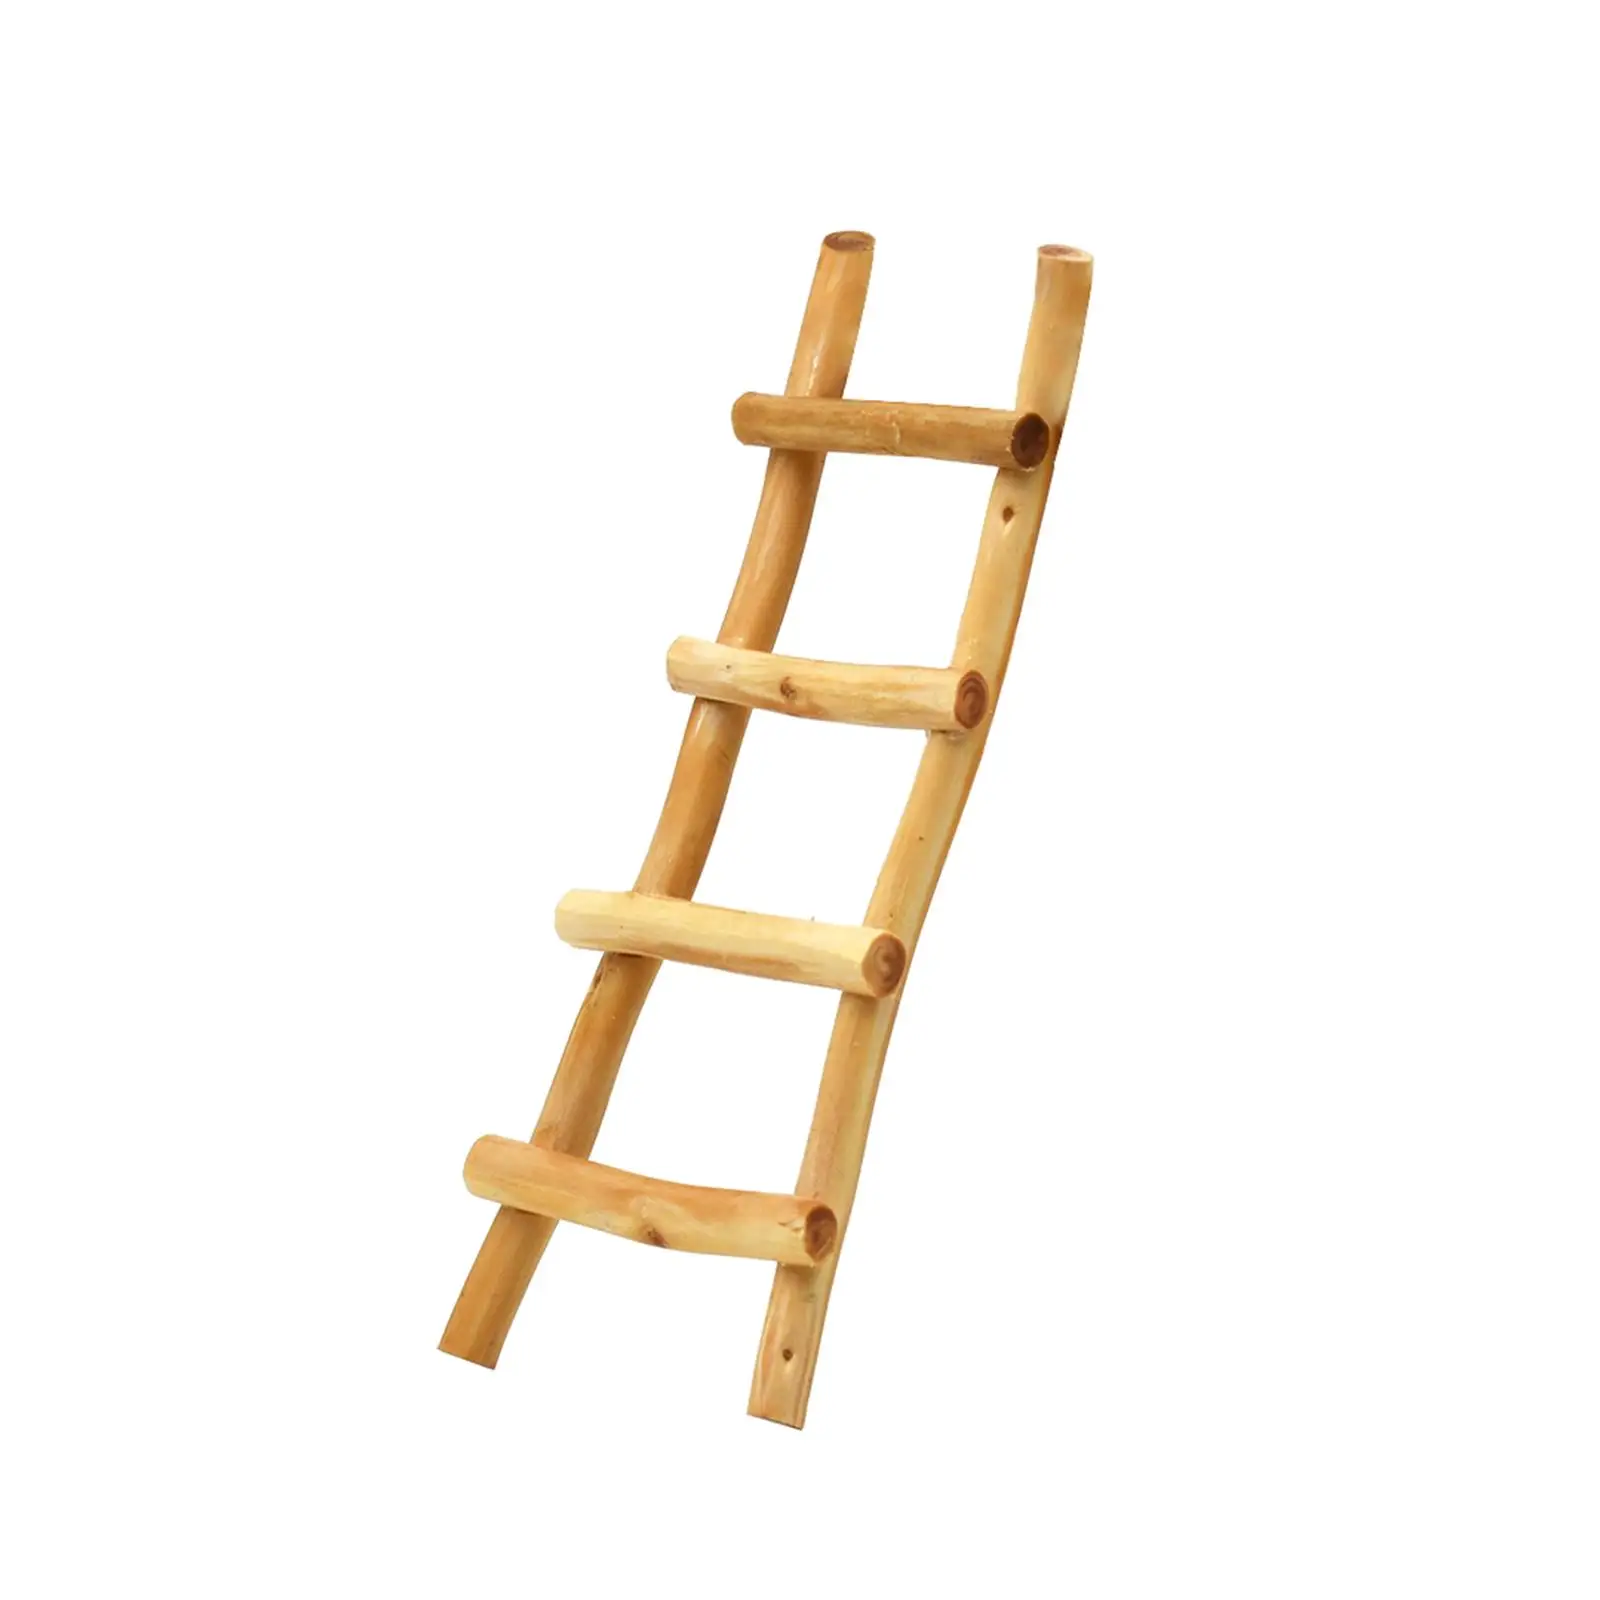 1:12 Fairy Garden Ladder Furniture Landscape Decor 1/12 Wooden Mini Ladder